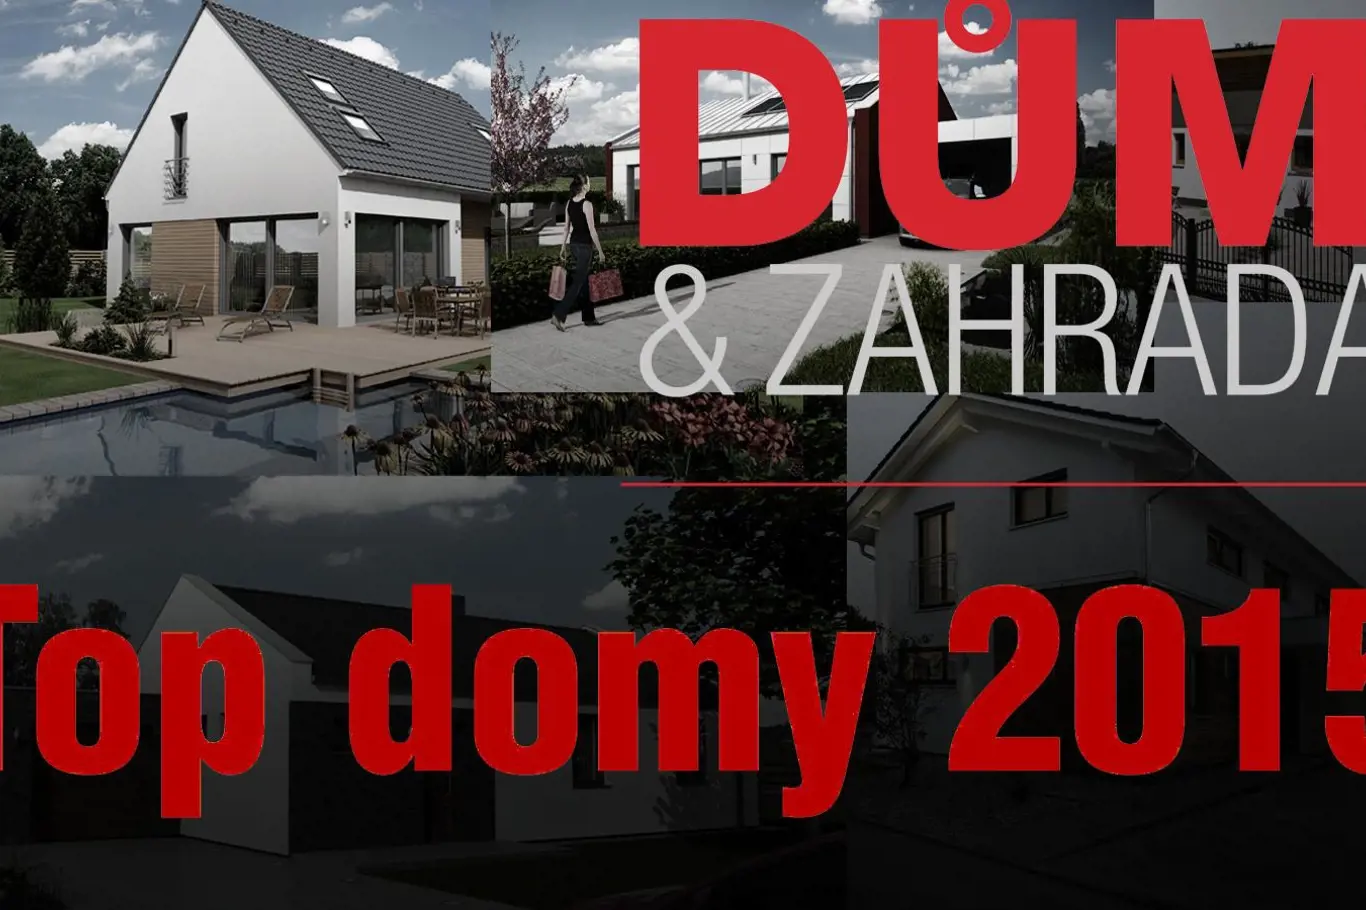 Top Domy 2014